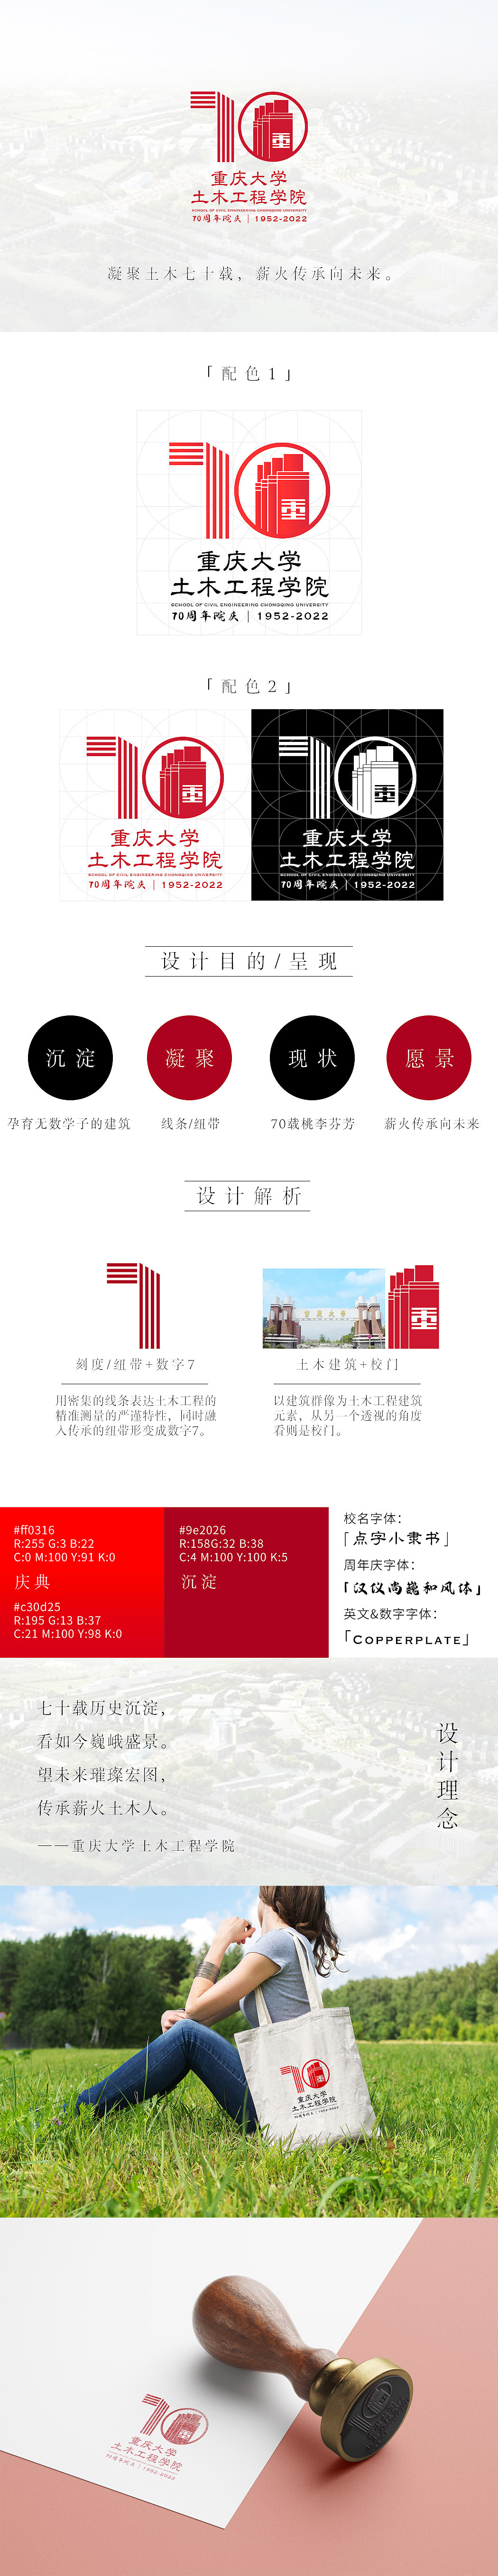 LOGO设计-重庆大学40周年校庆图1